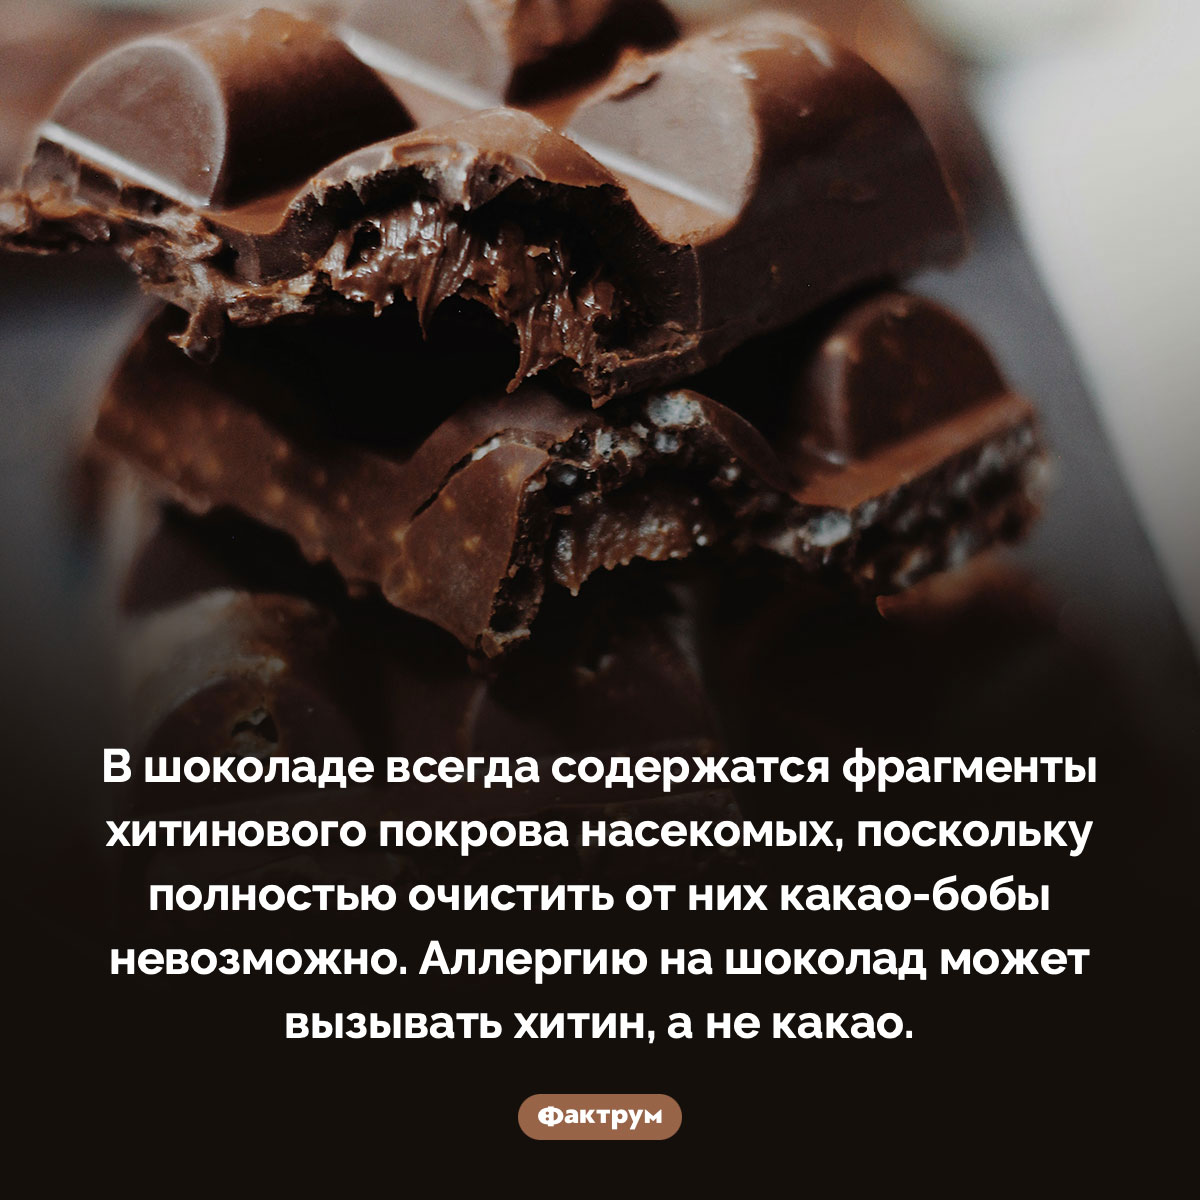 Насекомые в шоколаде. В шоколаде всегда содержатся фрагменты хитинового покрова насекомых, поскольку полностью очистить от них какао-бобы невозможно. Аллергию на шоколад может вызывать хитин, а не какао.